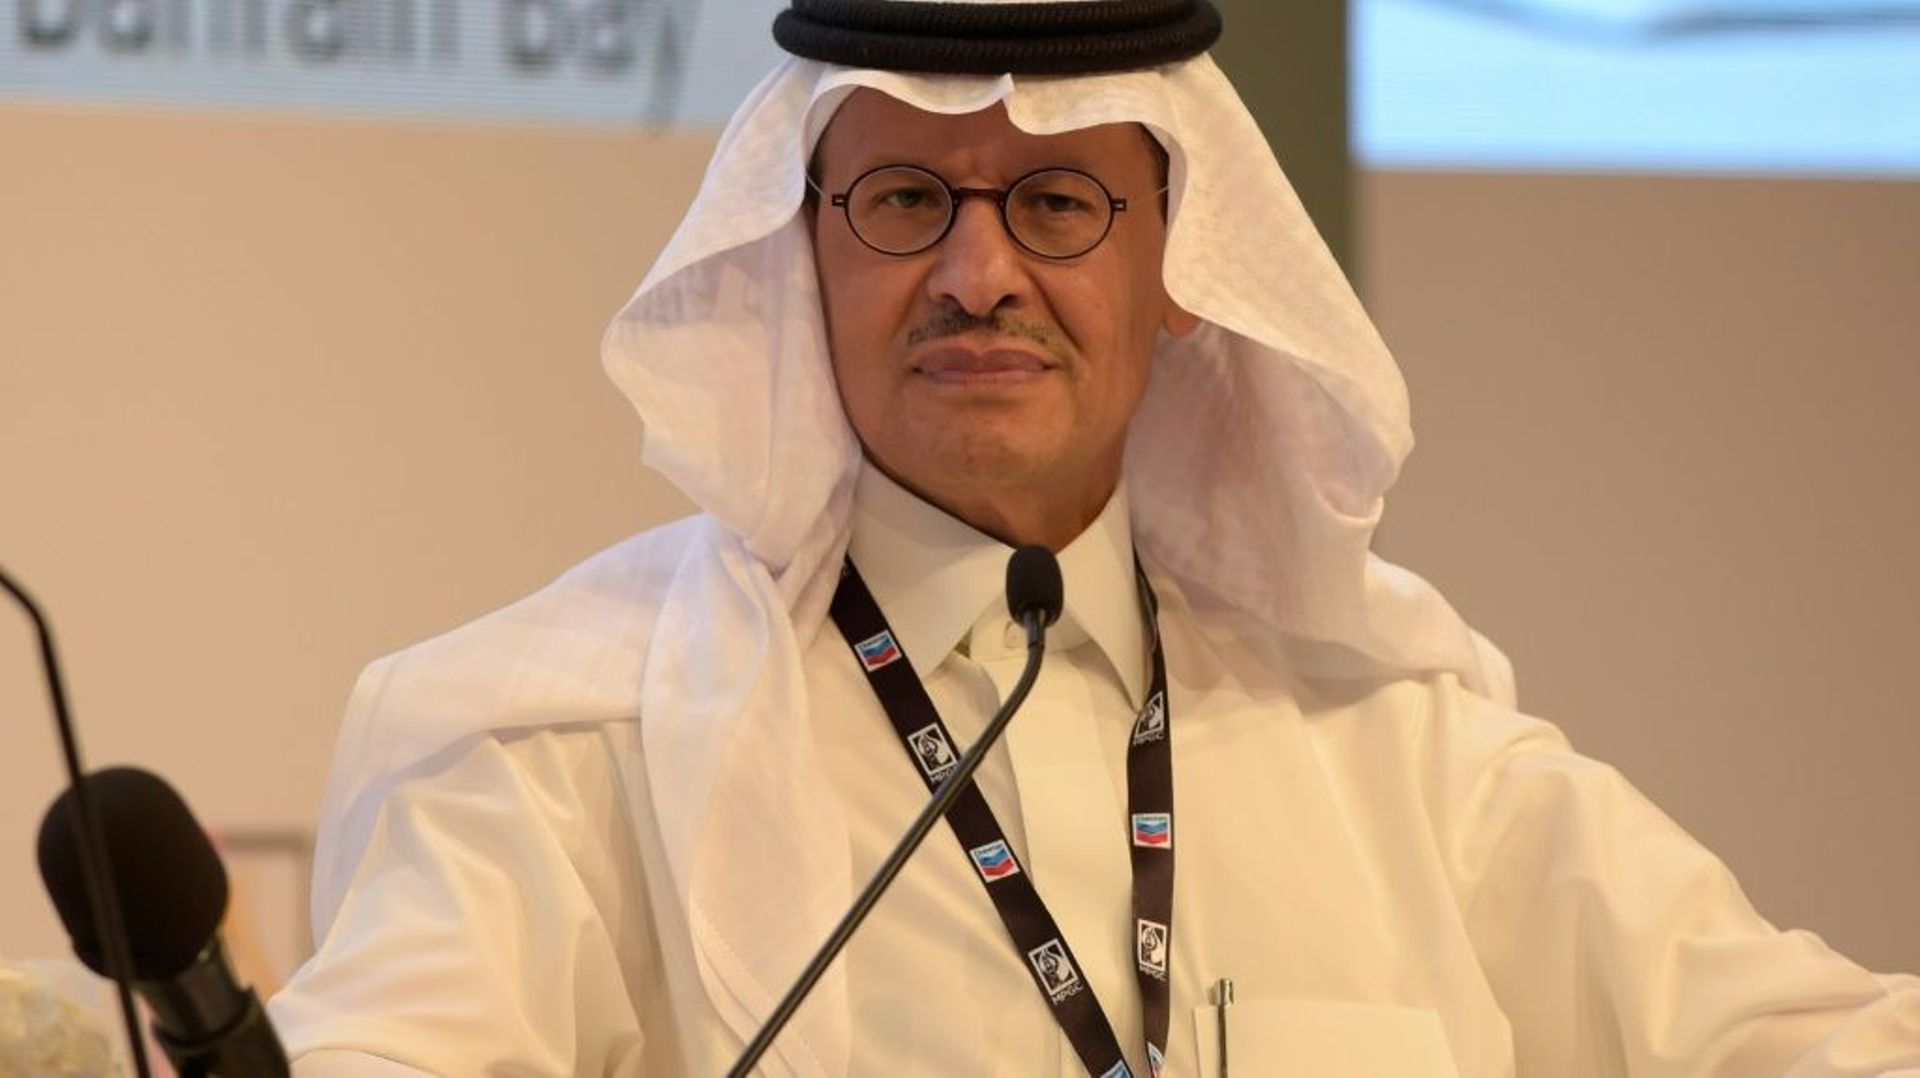 Le ministre saoudien de l'Energie, le prince Abdelaziz ben Salmane, lors d'une conférence à Bahreïn, le 16 mai 2022